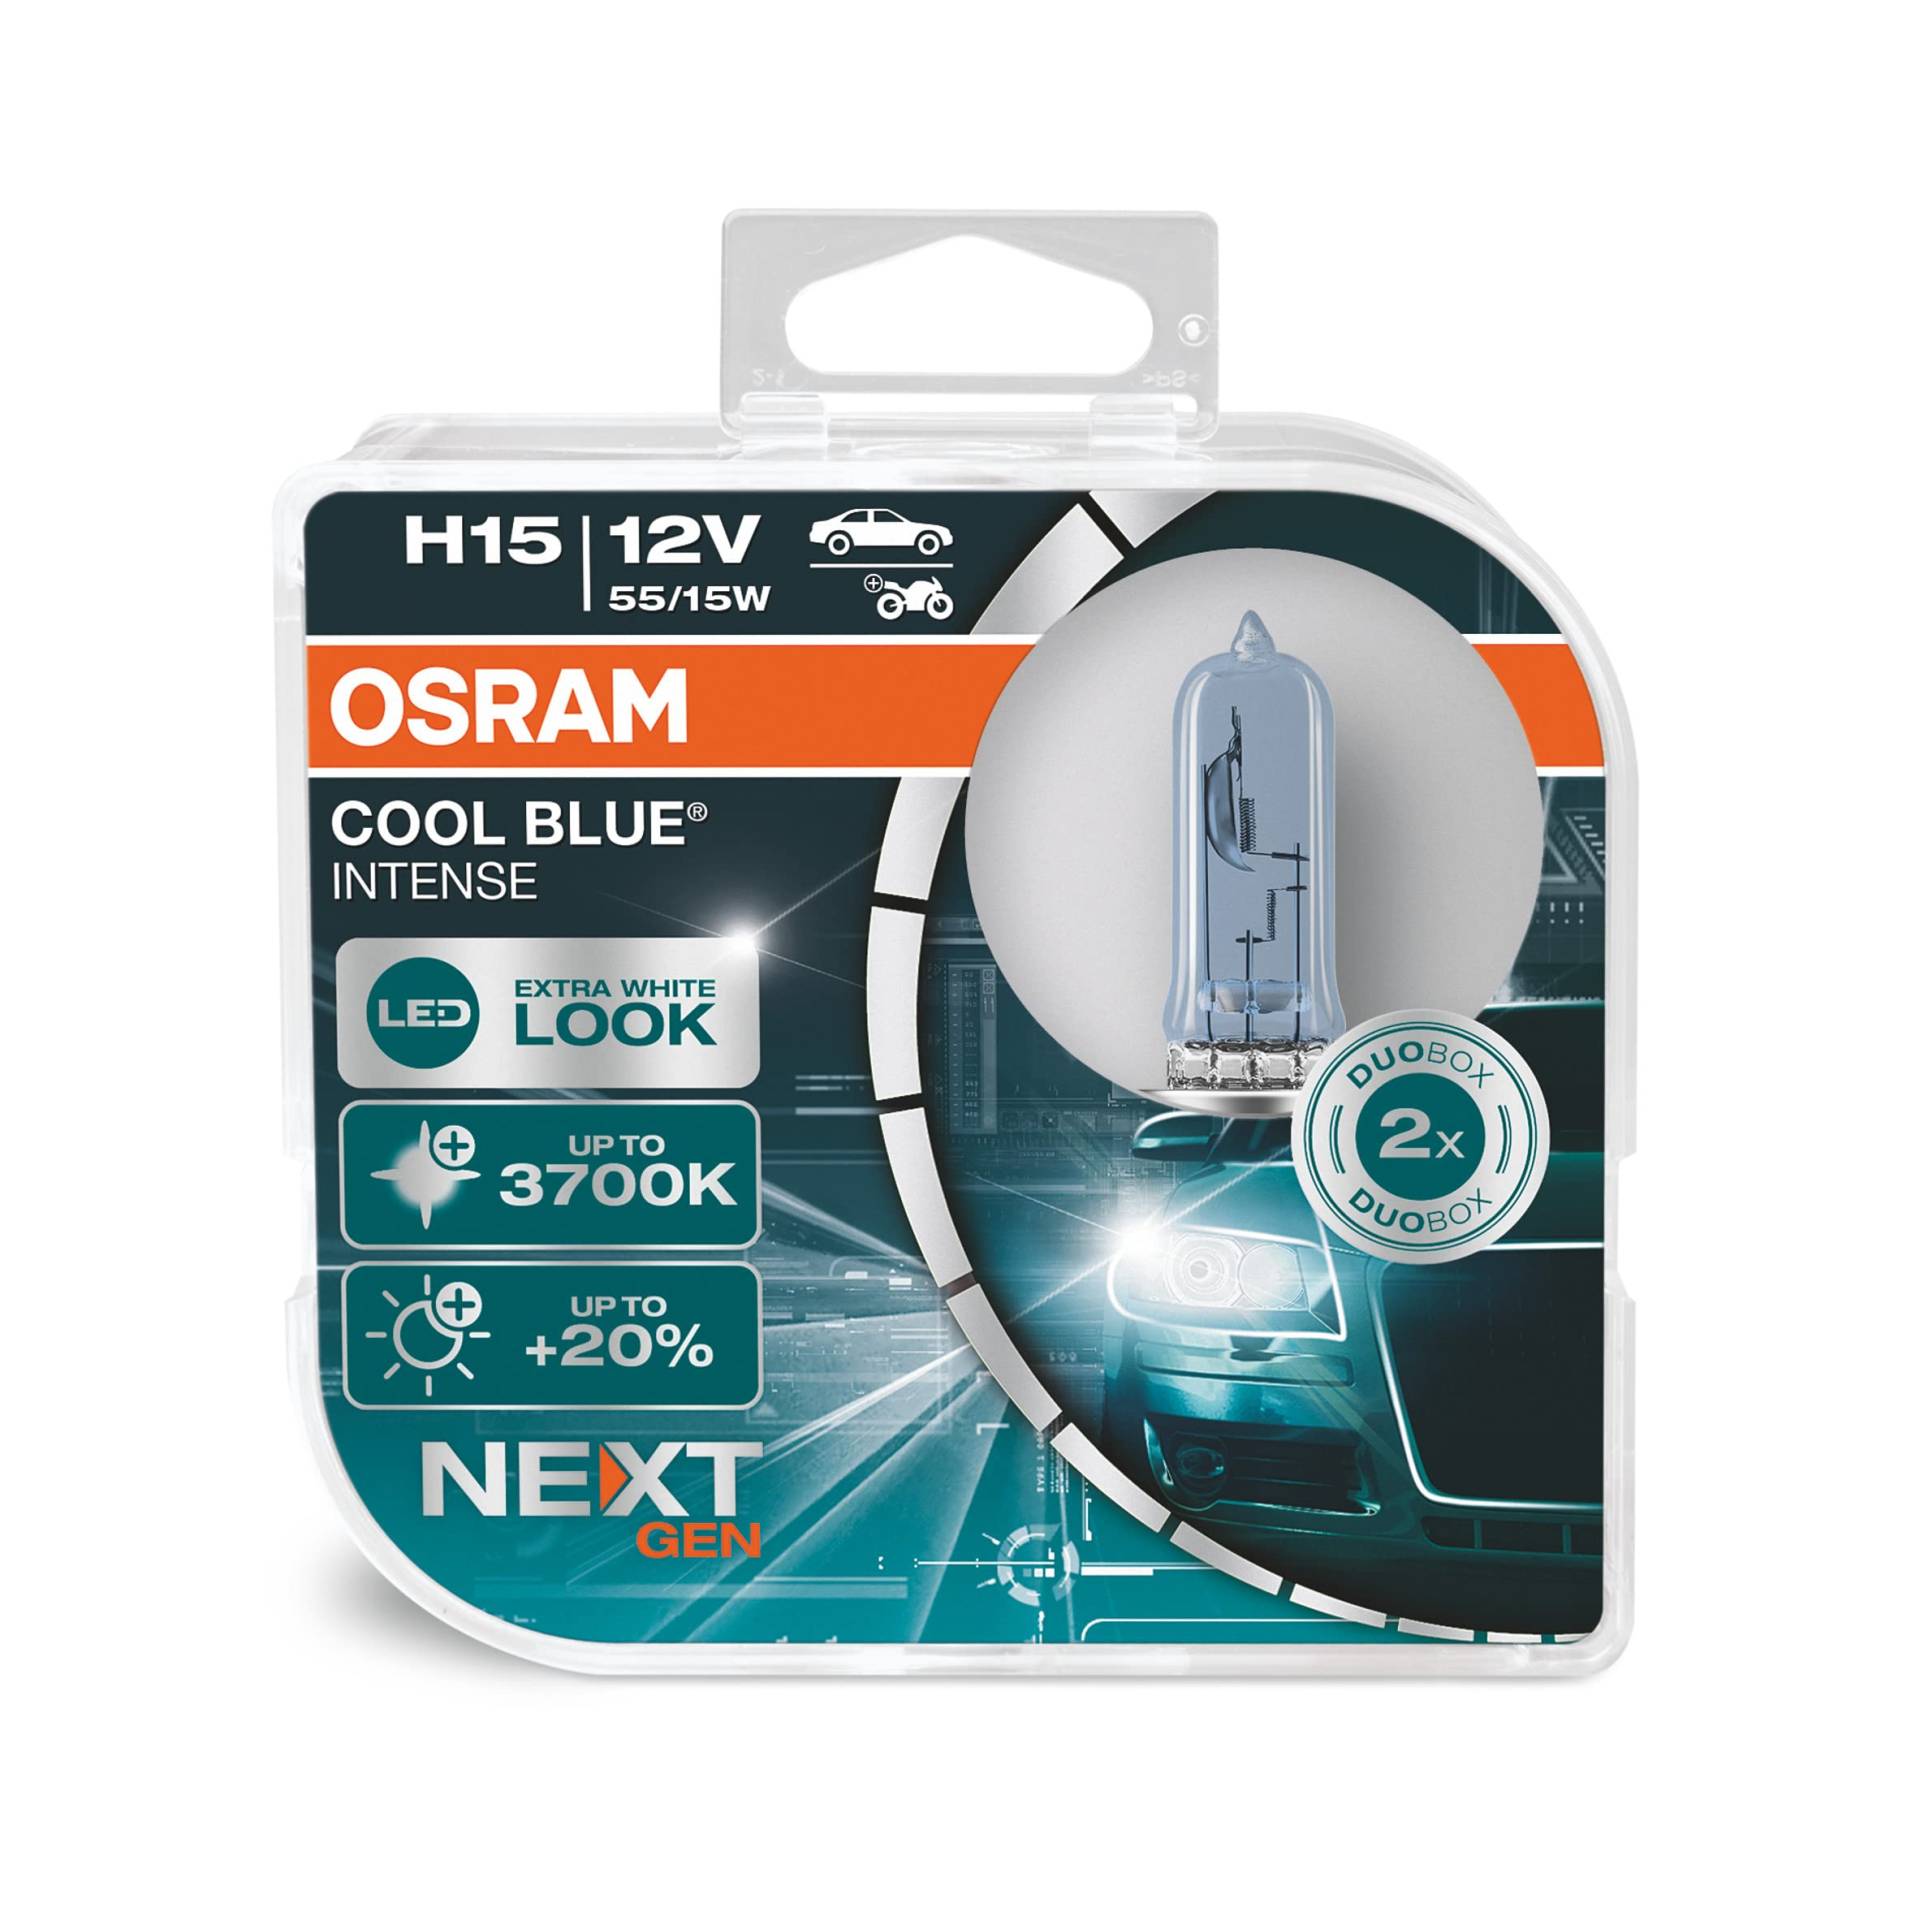 Osram COOL BLUE® INTENSE H15, 20% mehr Helligkeit, bis zu 3700K, Halogen-Scheinwerferlampe, LED-Look, Duo Box (2 Lampen), 64176CBN-HCB [Energieklasse A] von Osram